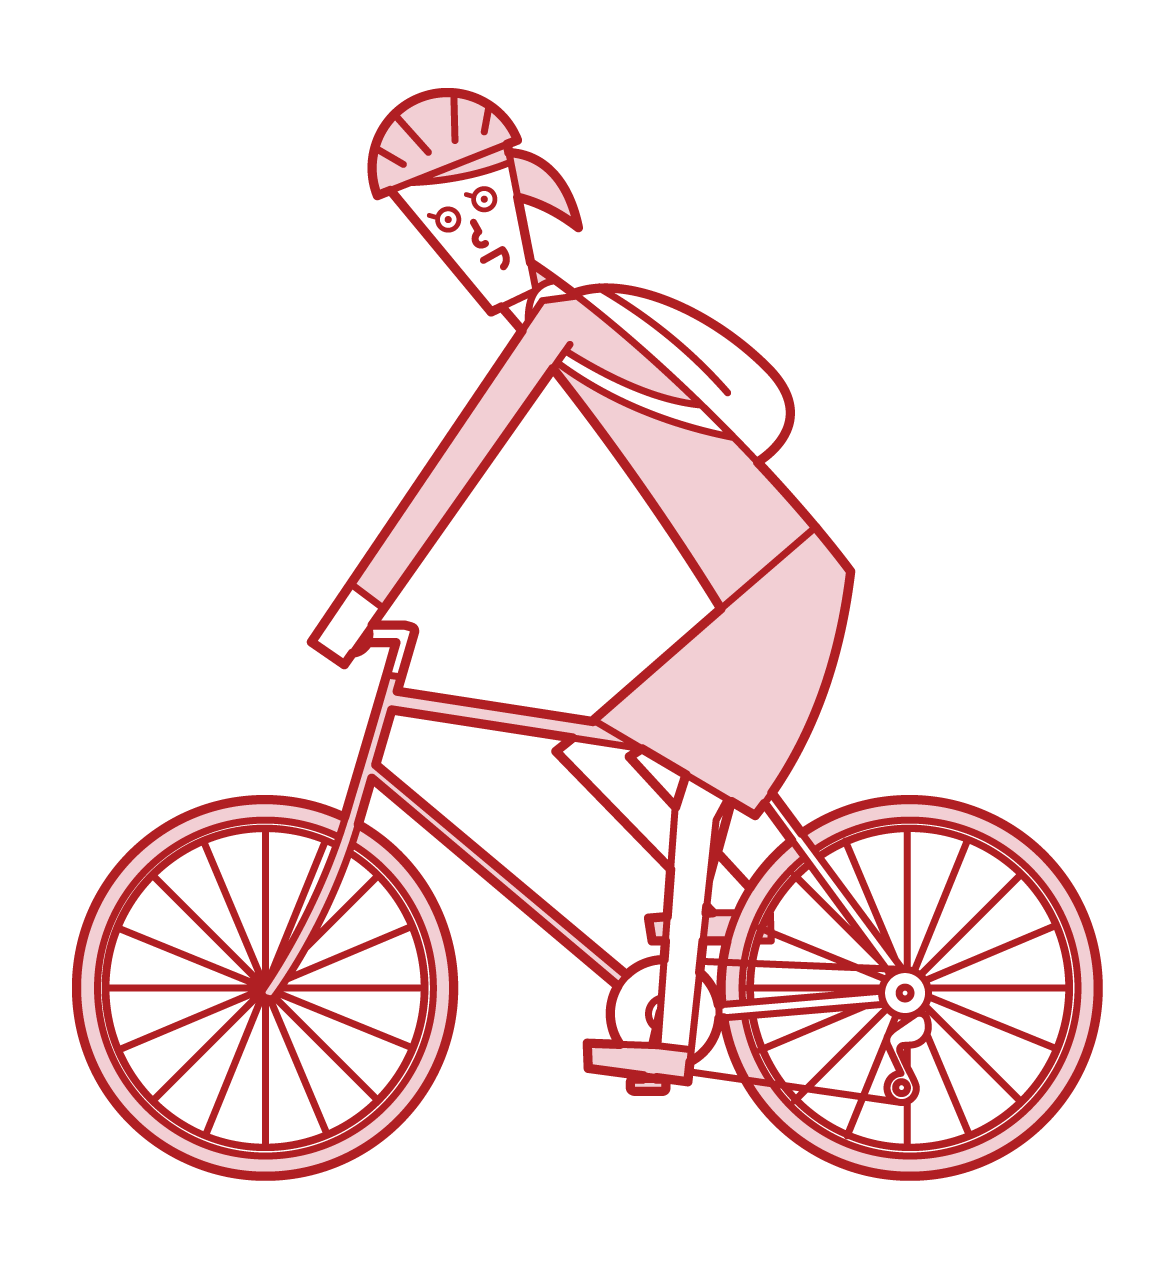 자전거로 출근하는 사람(여성)의 일러스트